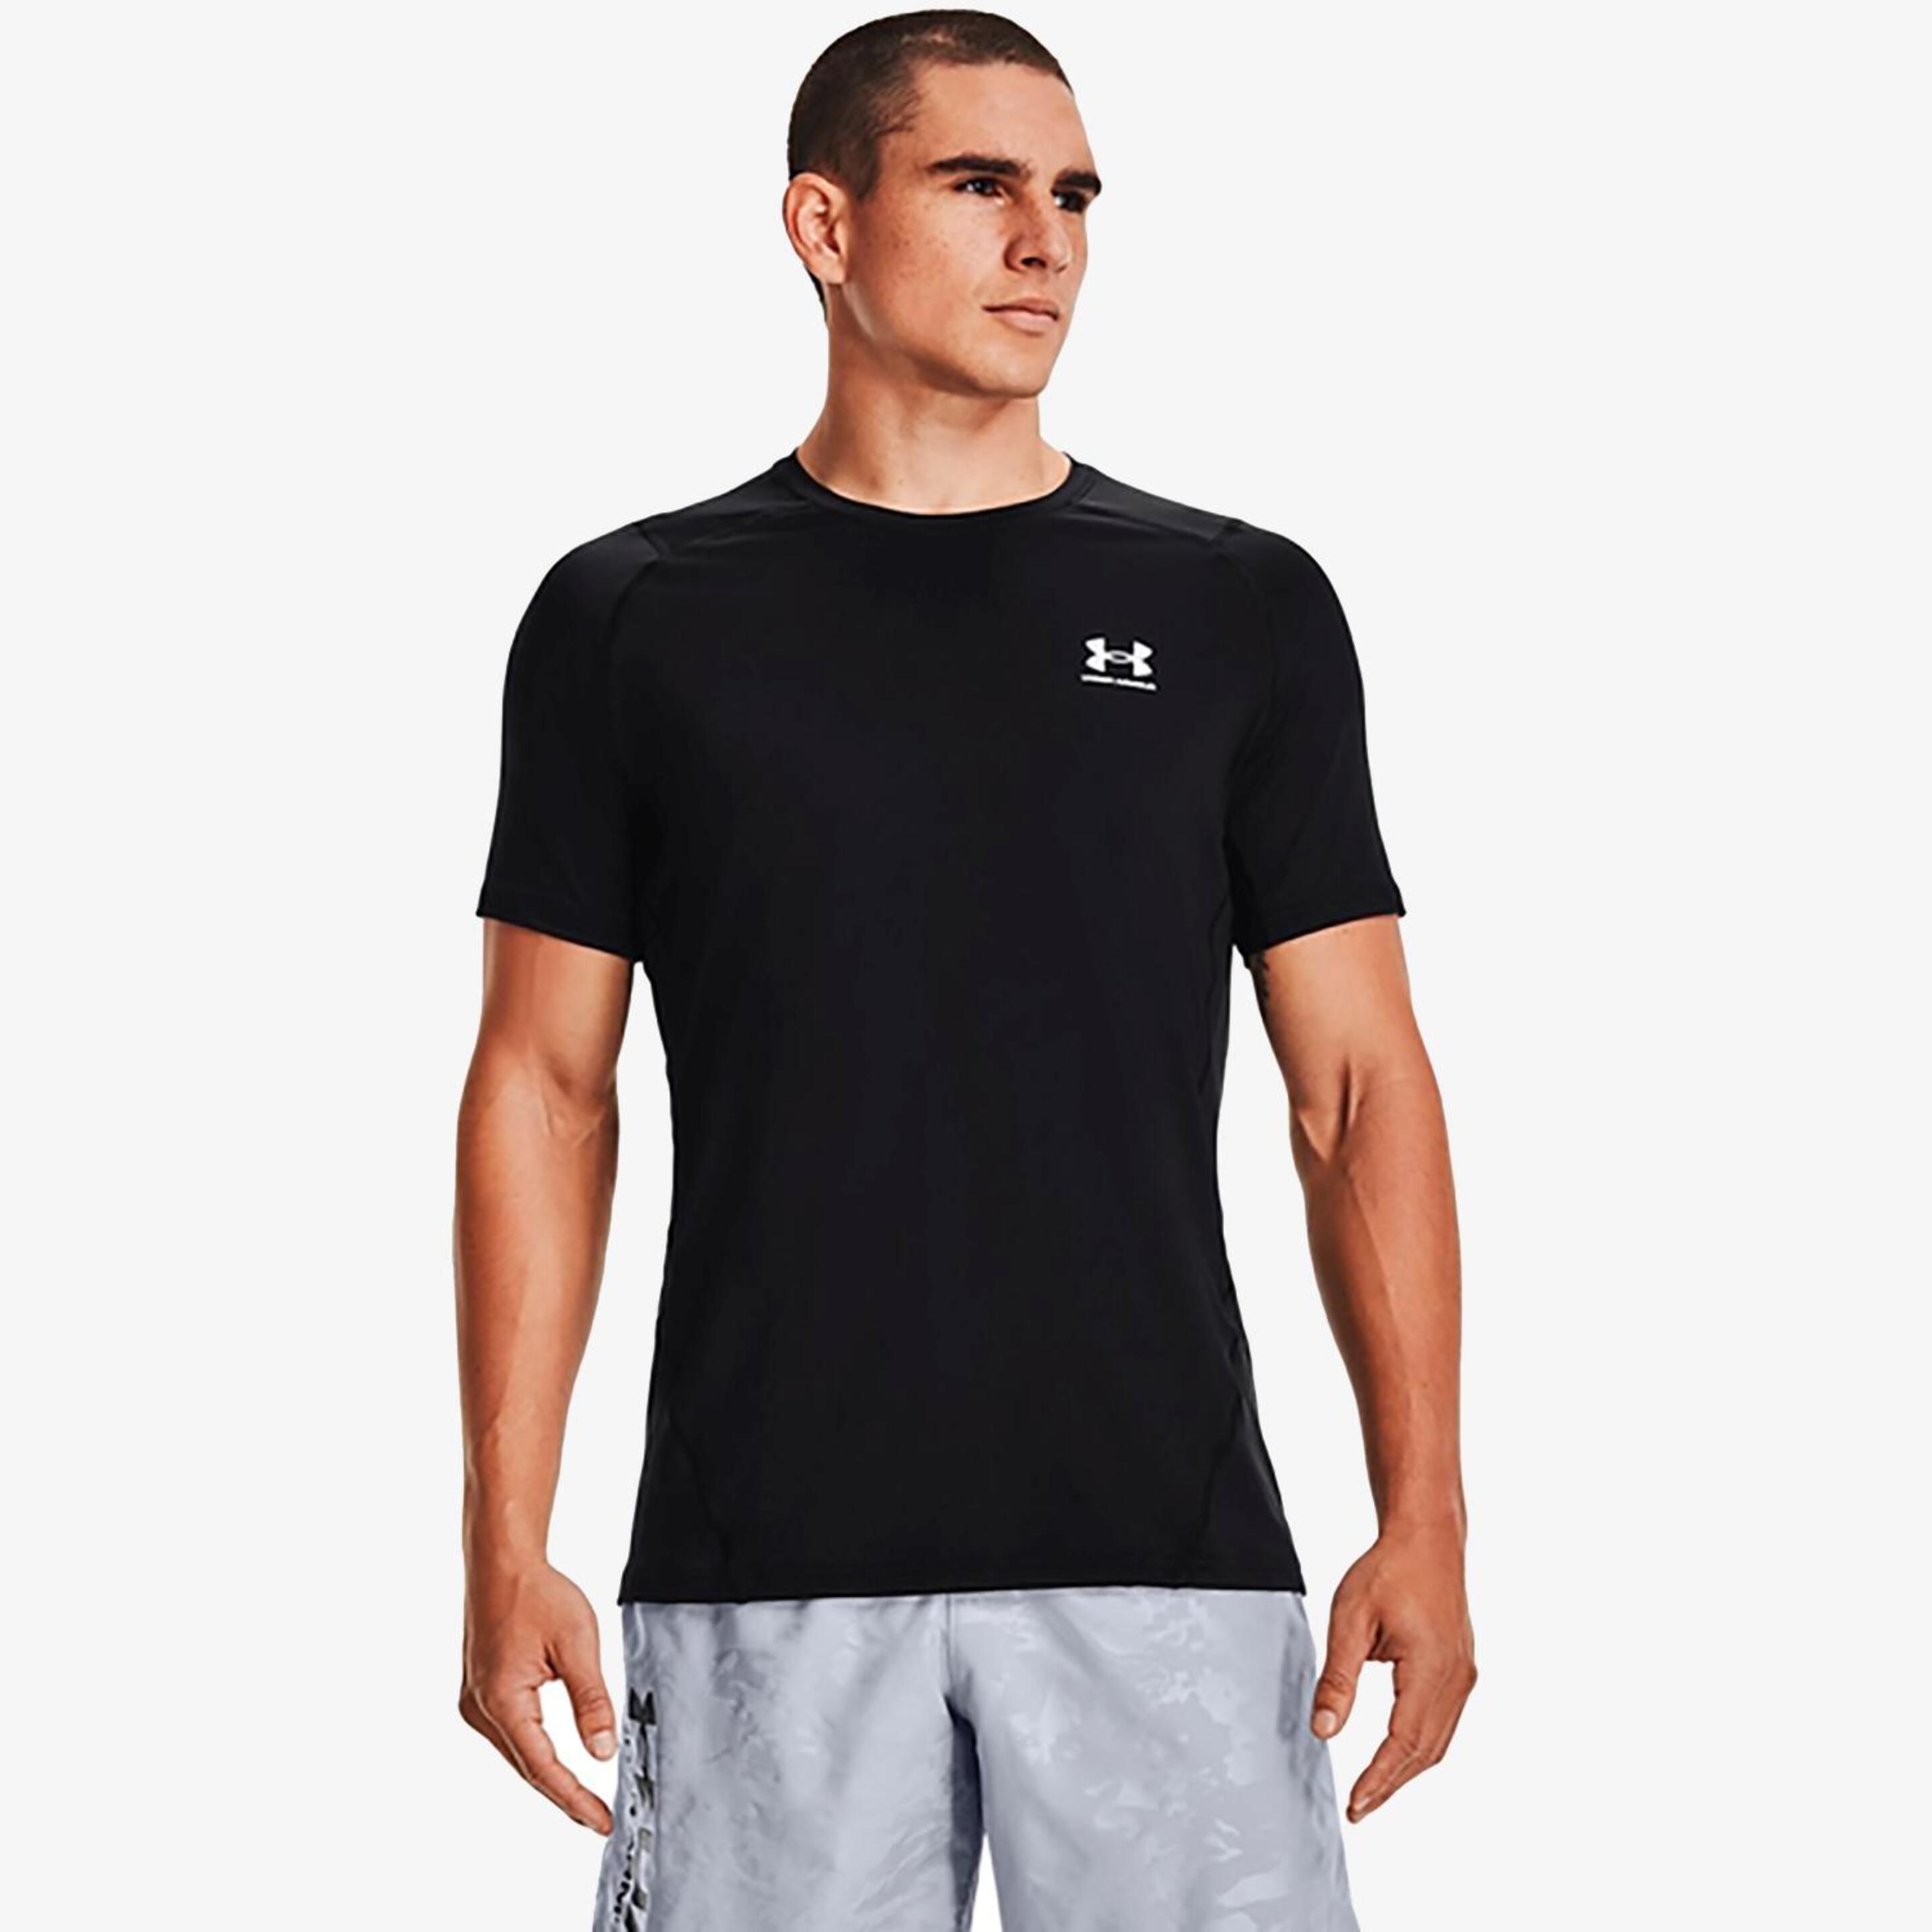 Camiseta Running Under Armour - negro - Camiseta Hombre